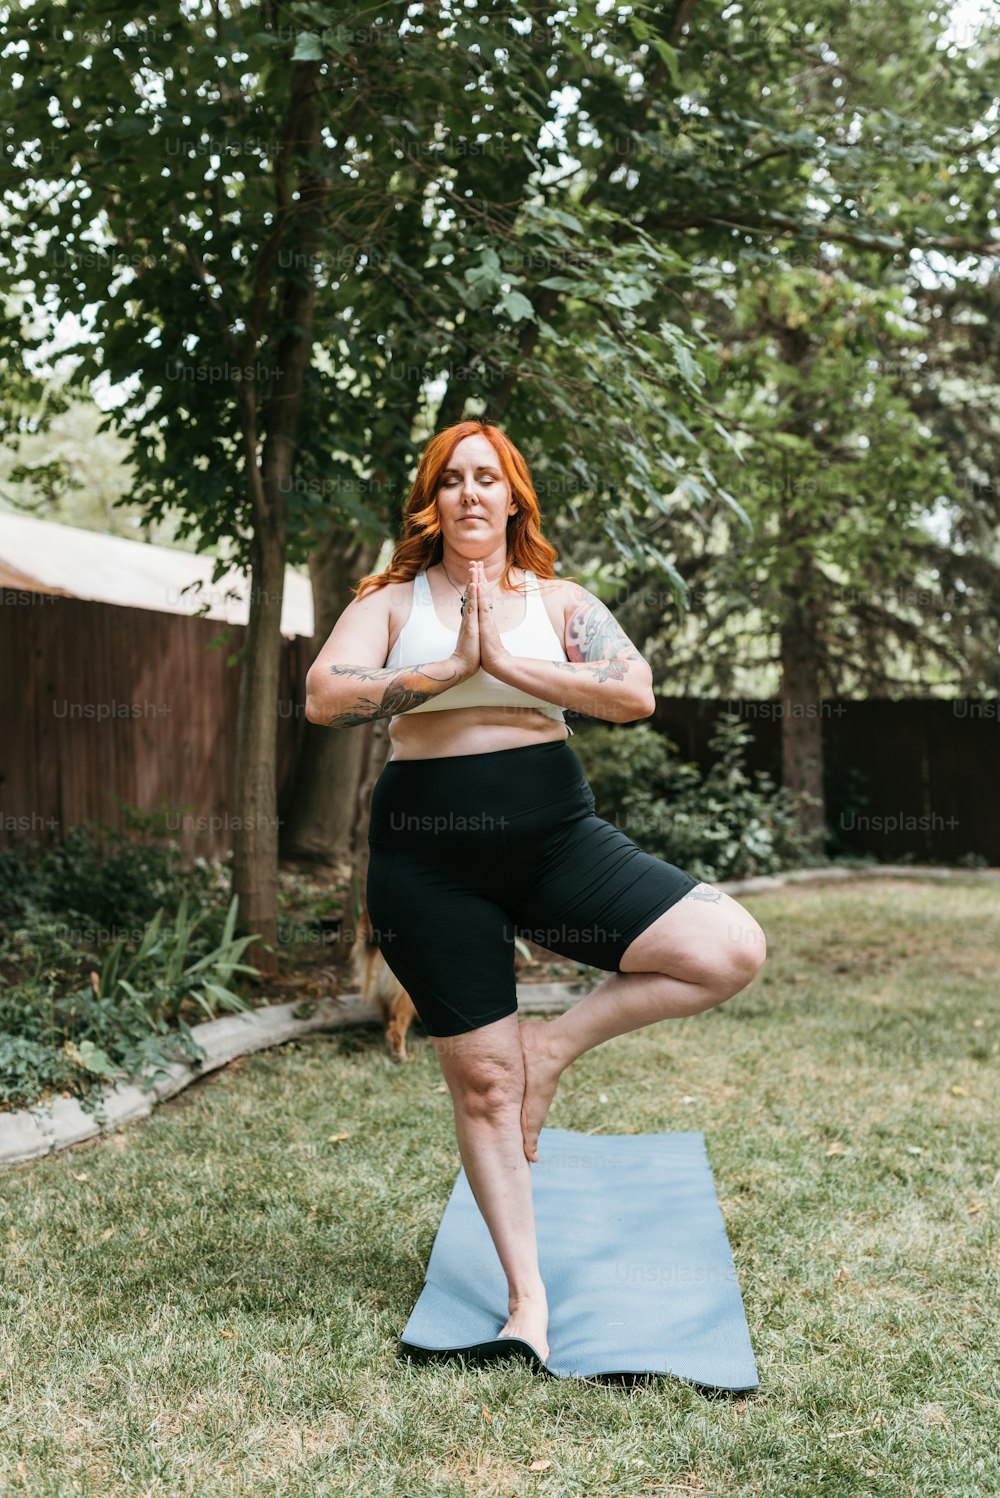 Une femme dans une pose de yoga sur un tapis de yoga